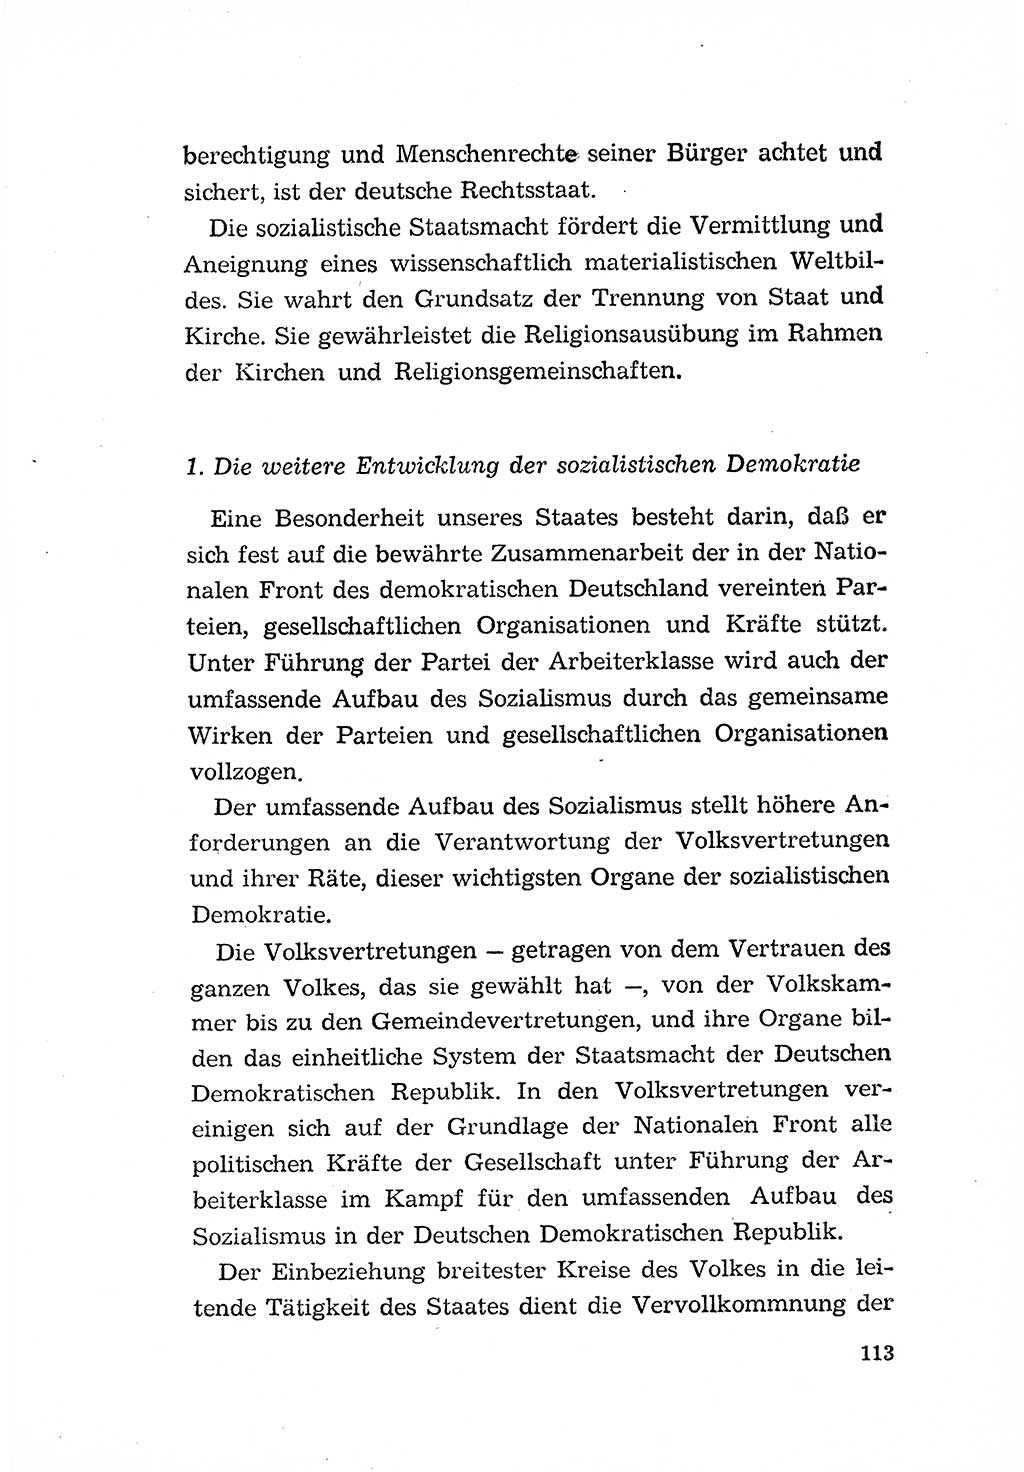 Programm der Sozialistischen Einheitspartei Deutschlands (SED) [Deutsche Demokratische Republik (DDR)] 1963, Seite 113 (Progr. SED DDR 1963, S. 113)